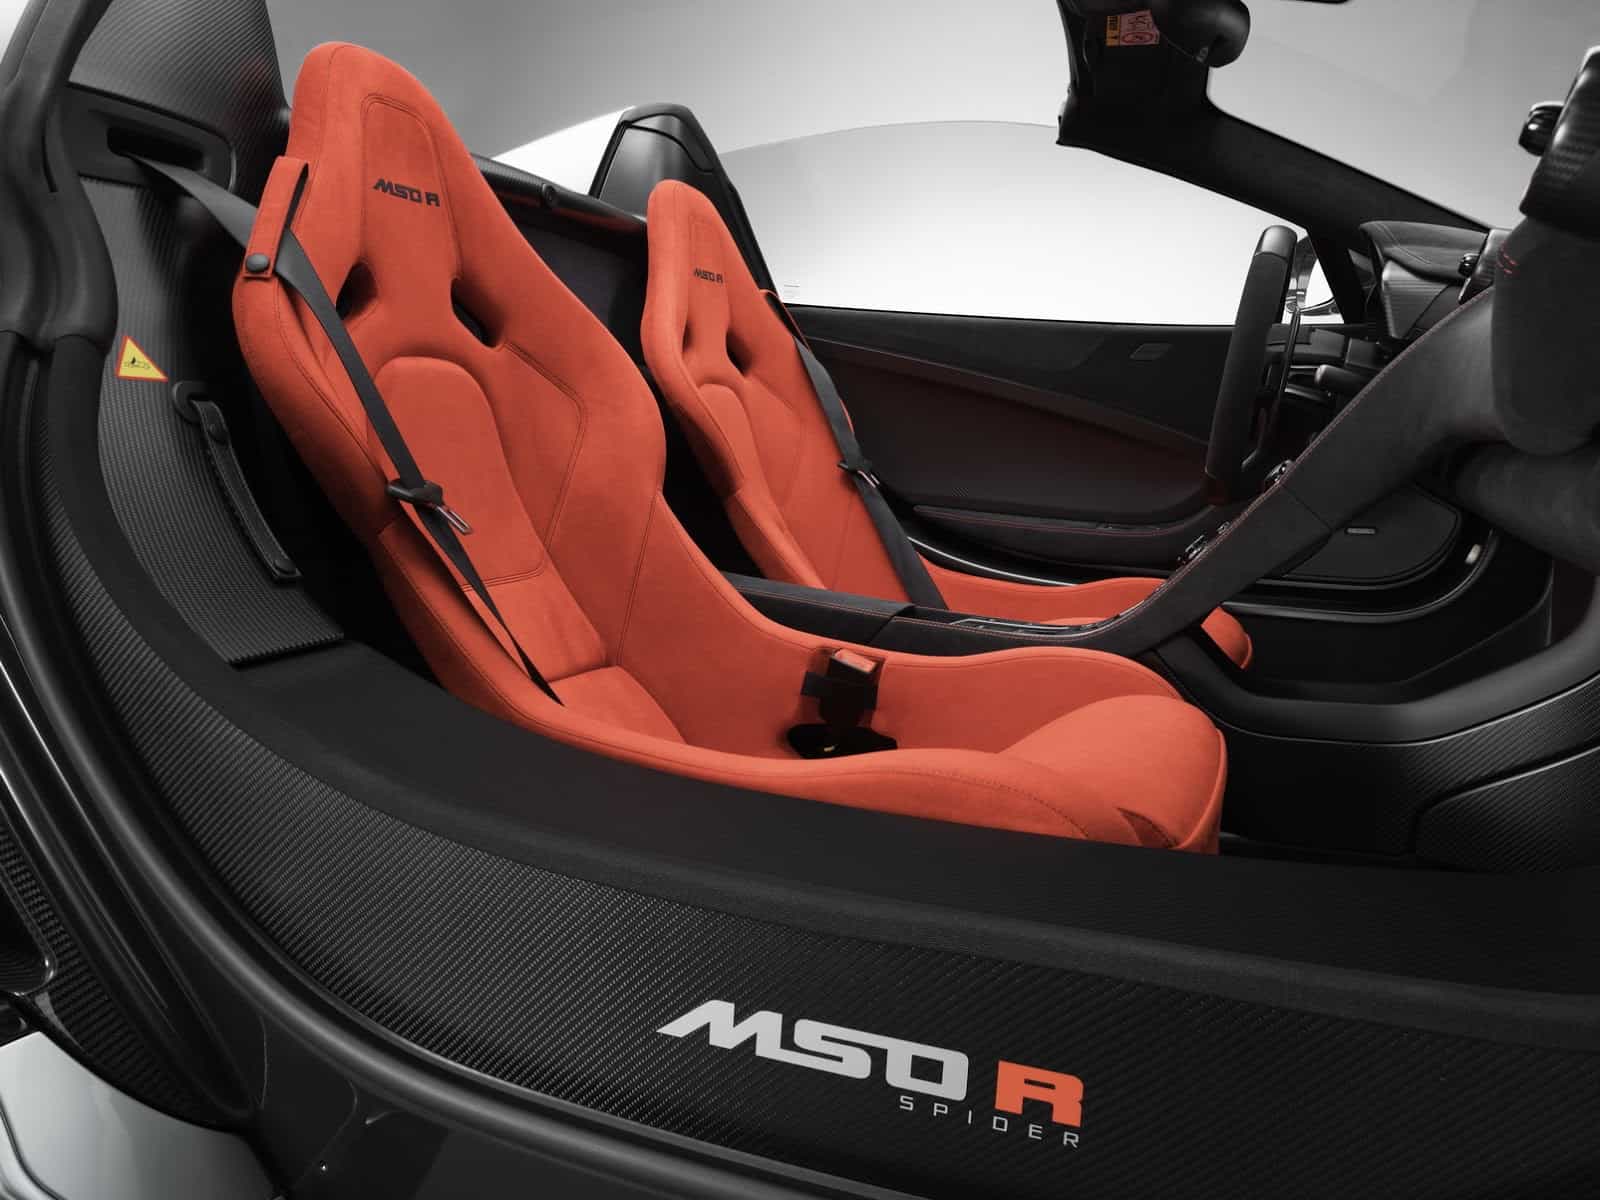 McLaren MSO R 10